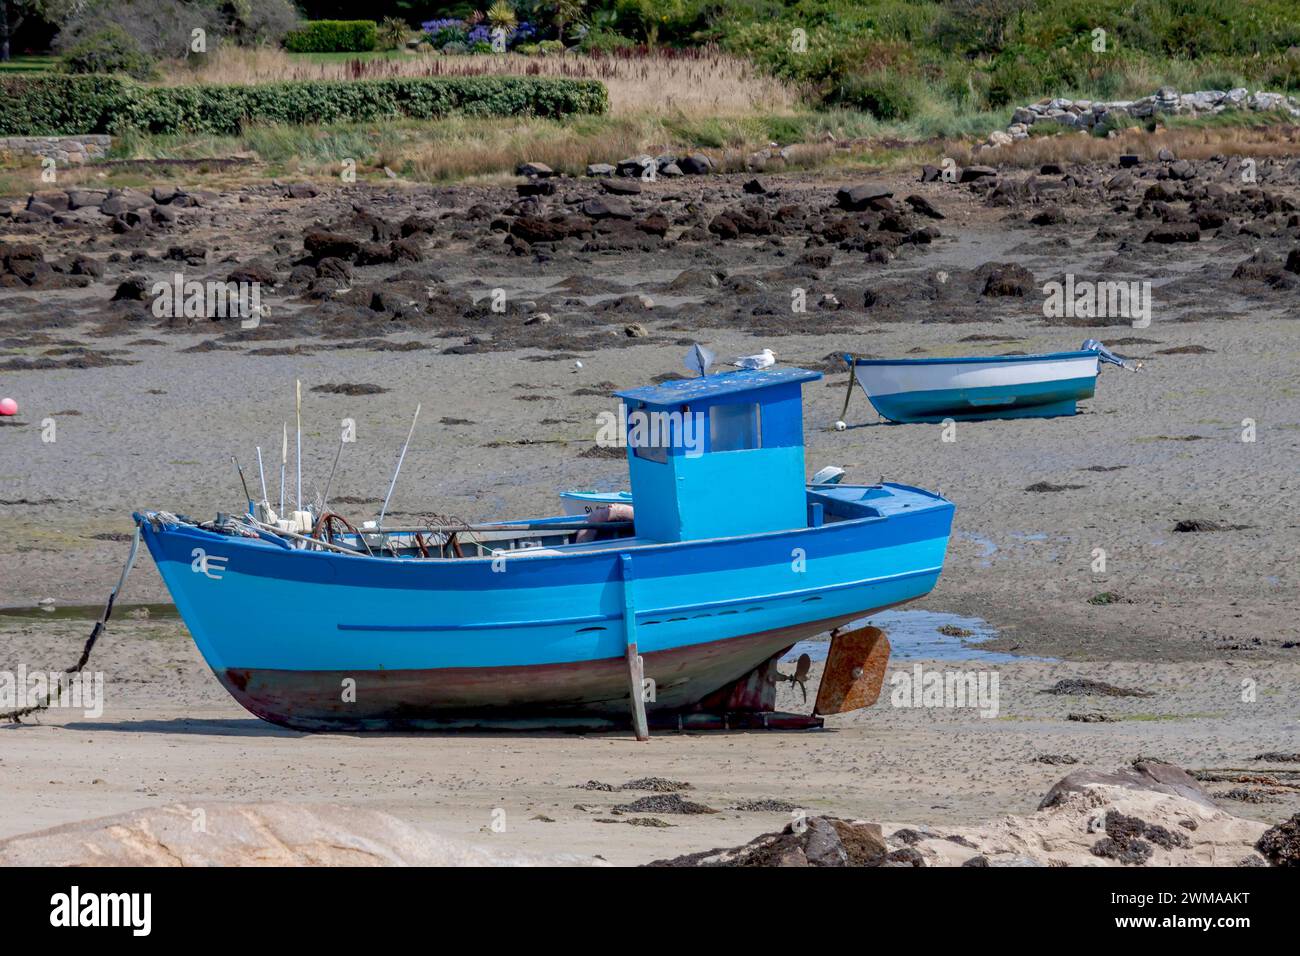 Bateaux de pêche sur la plage à marée basse, Bretagne, France Banque D'Images